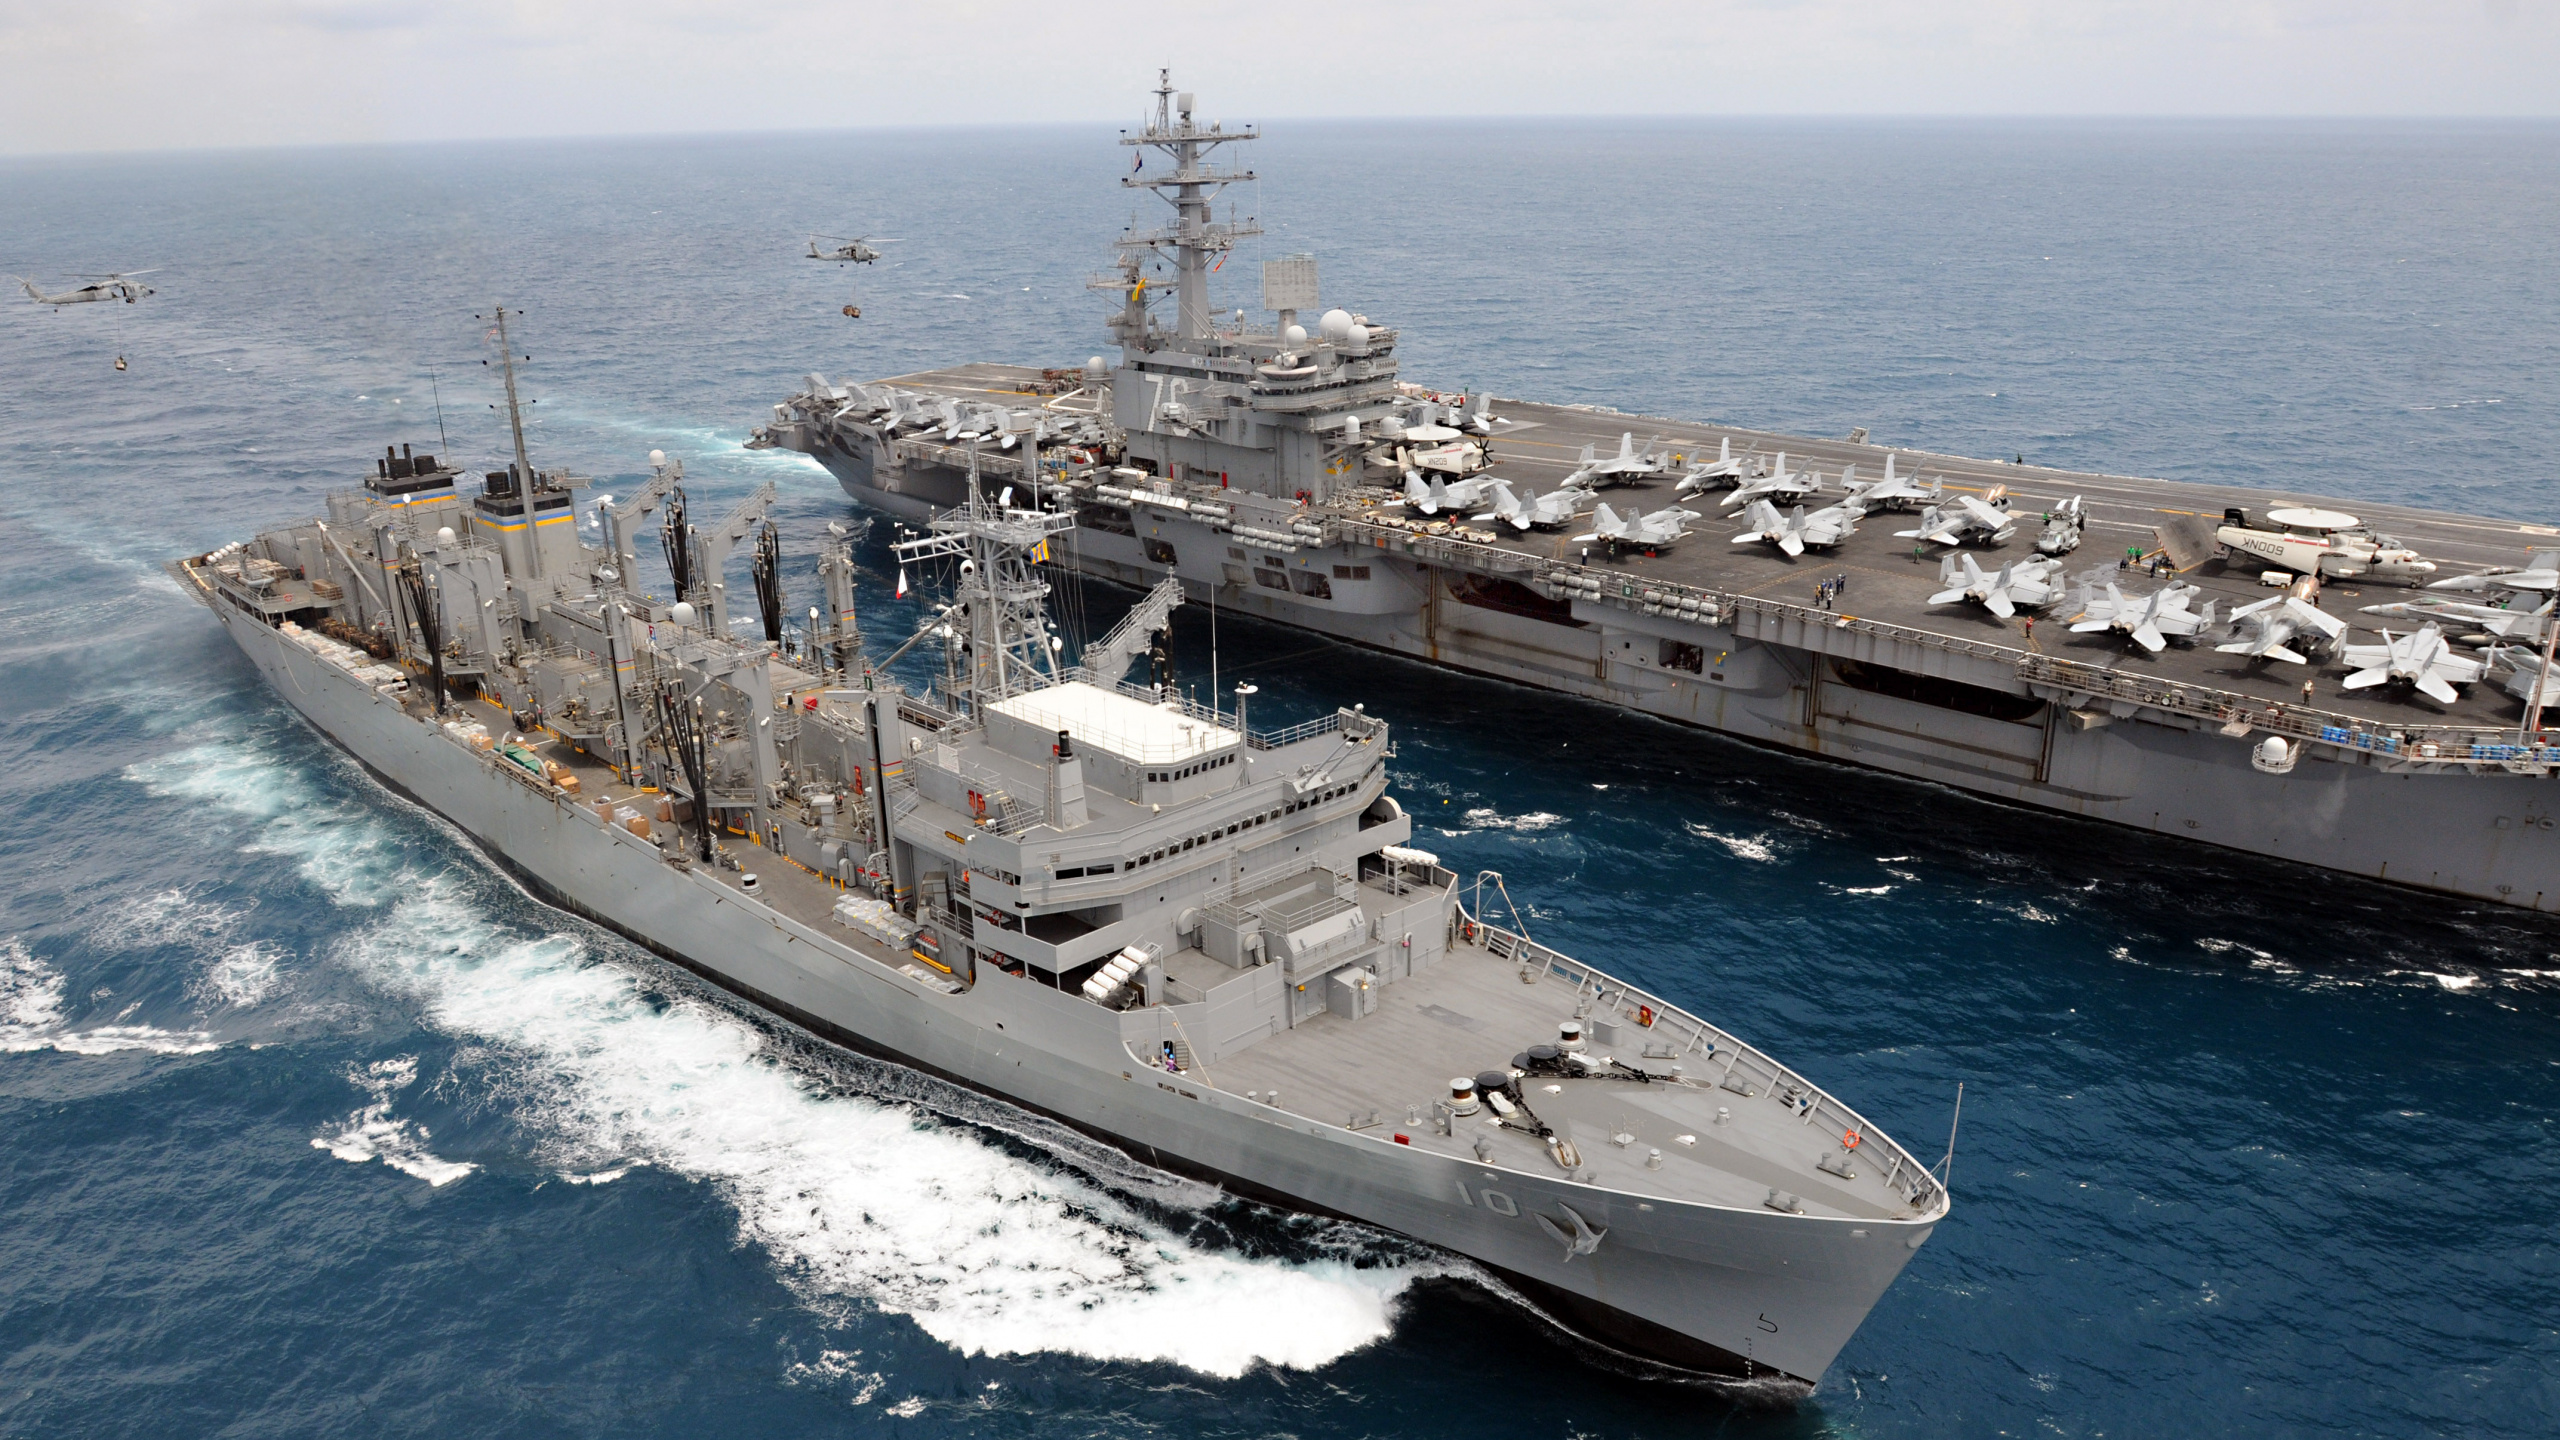 快战斗支援船, 航空母舰, 美国罗纳德*里根, 美国海军, 军舰 壁纸 2560x1440 允许